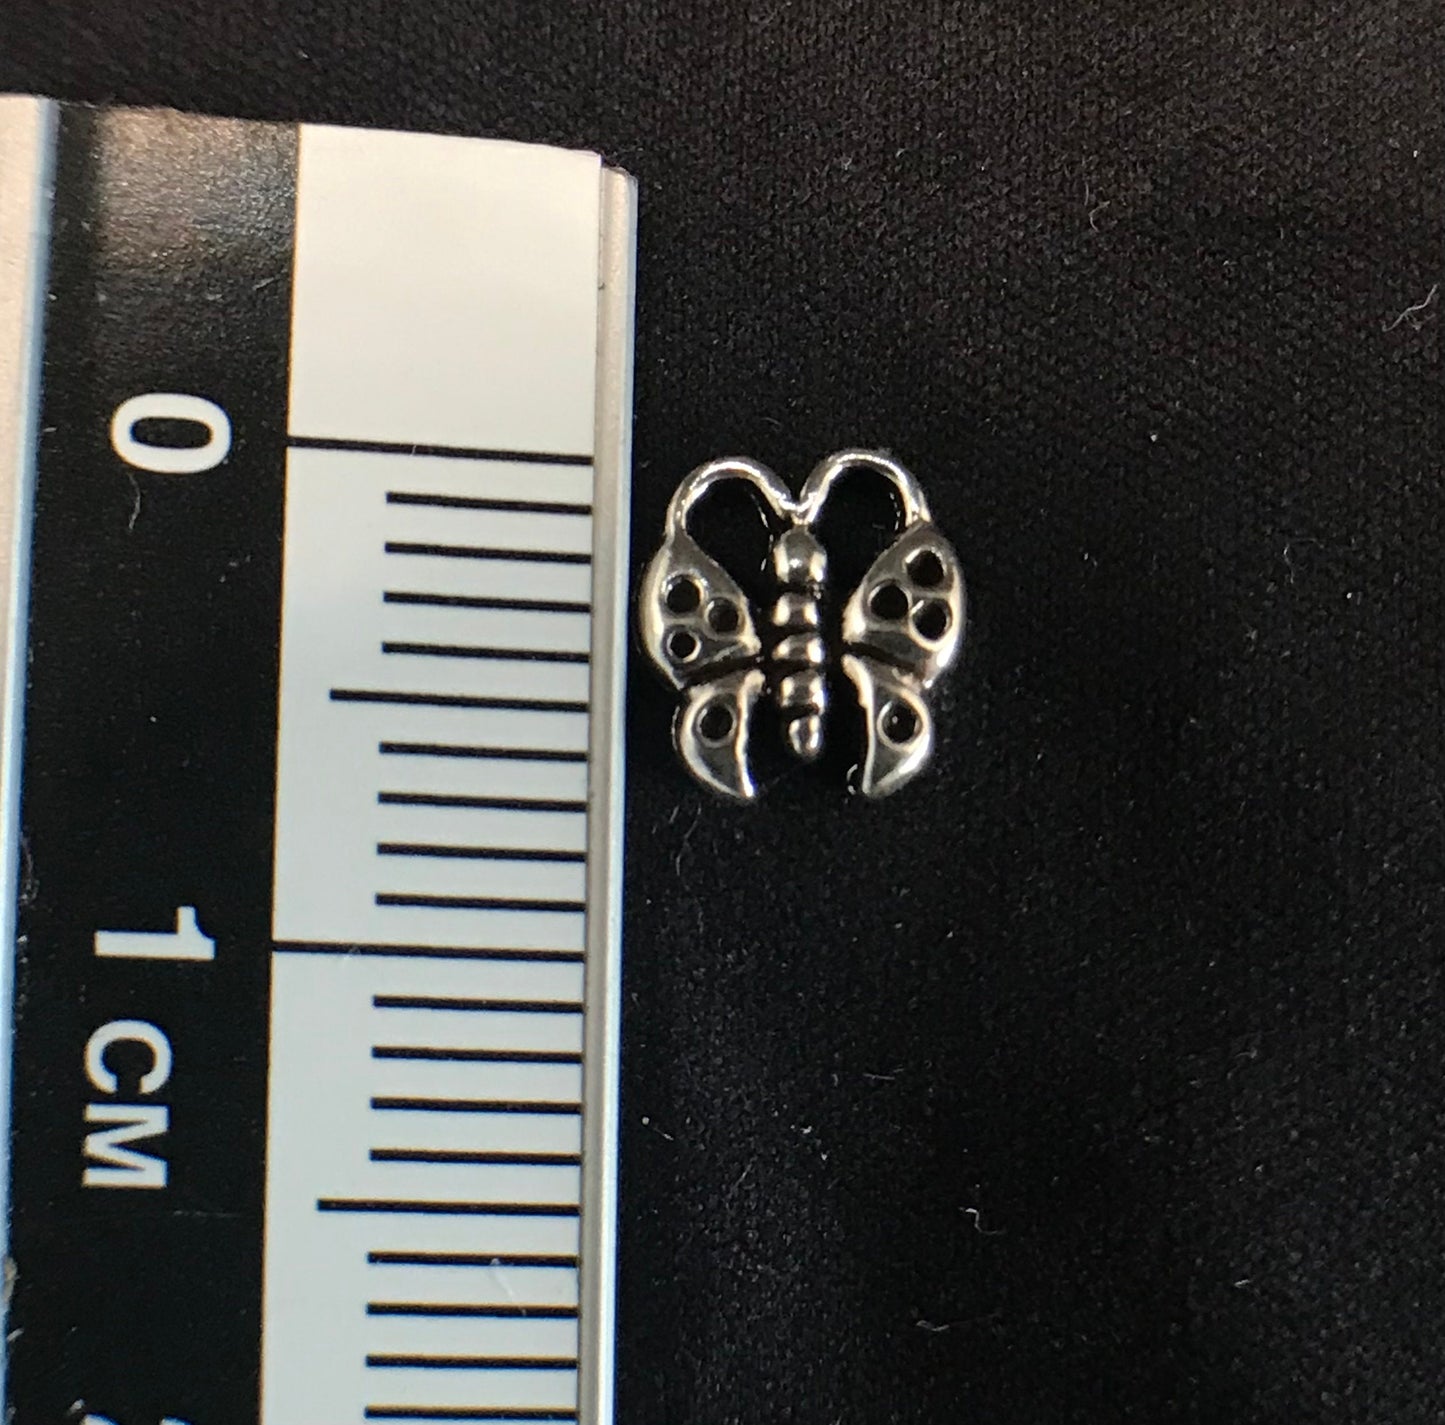 Butterfly earrings Sterling Silver 925 - TSE022